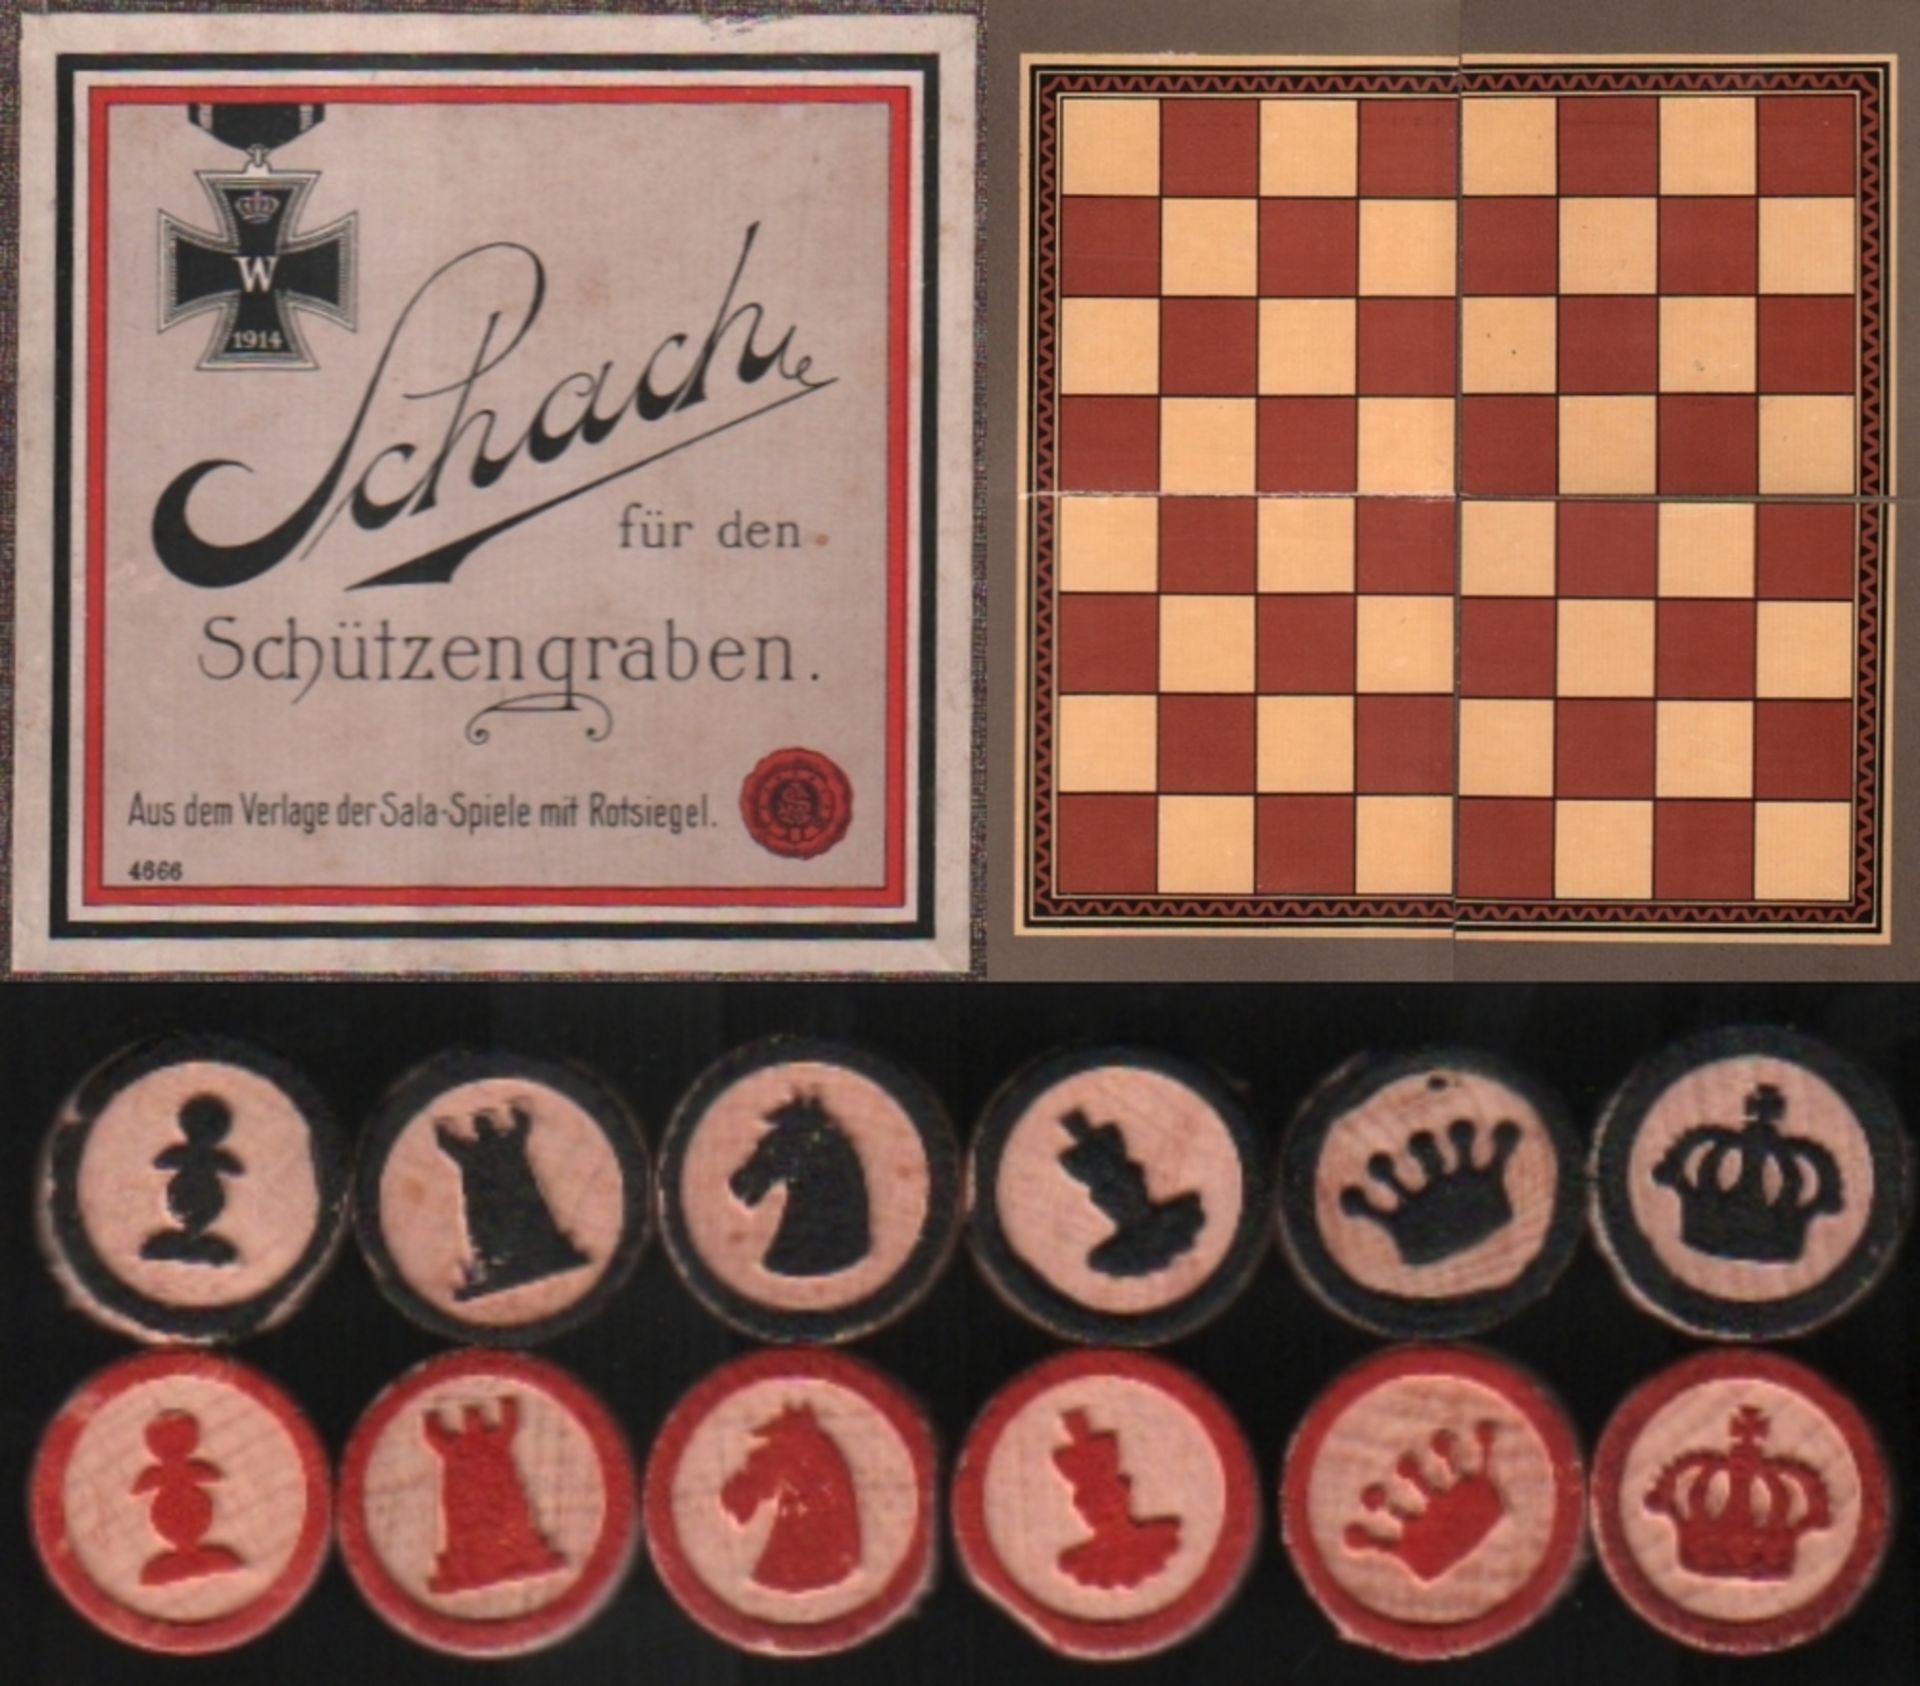 Deutschland. Schach für den Schützengraben. Schachfigurensatz mit 32 runden Spielsteinen aus Holz